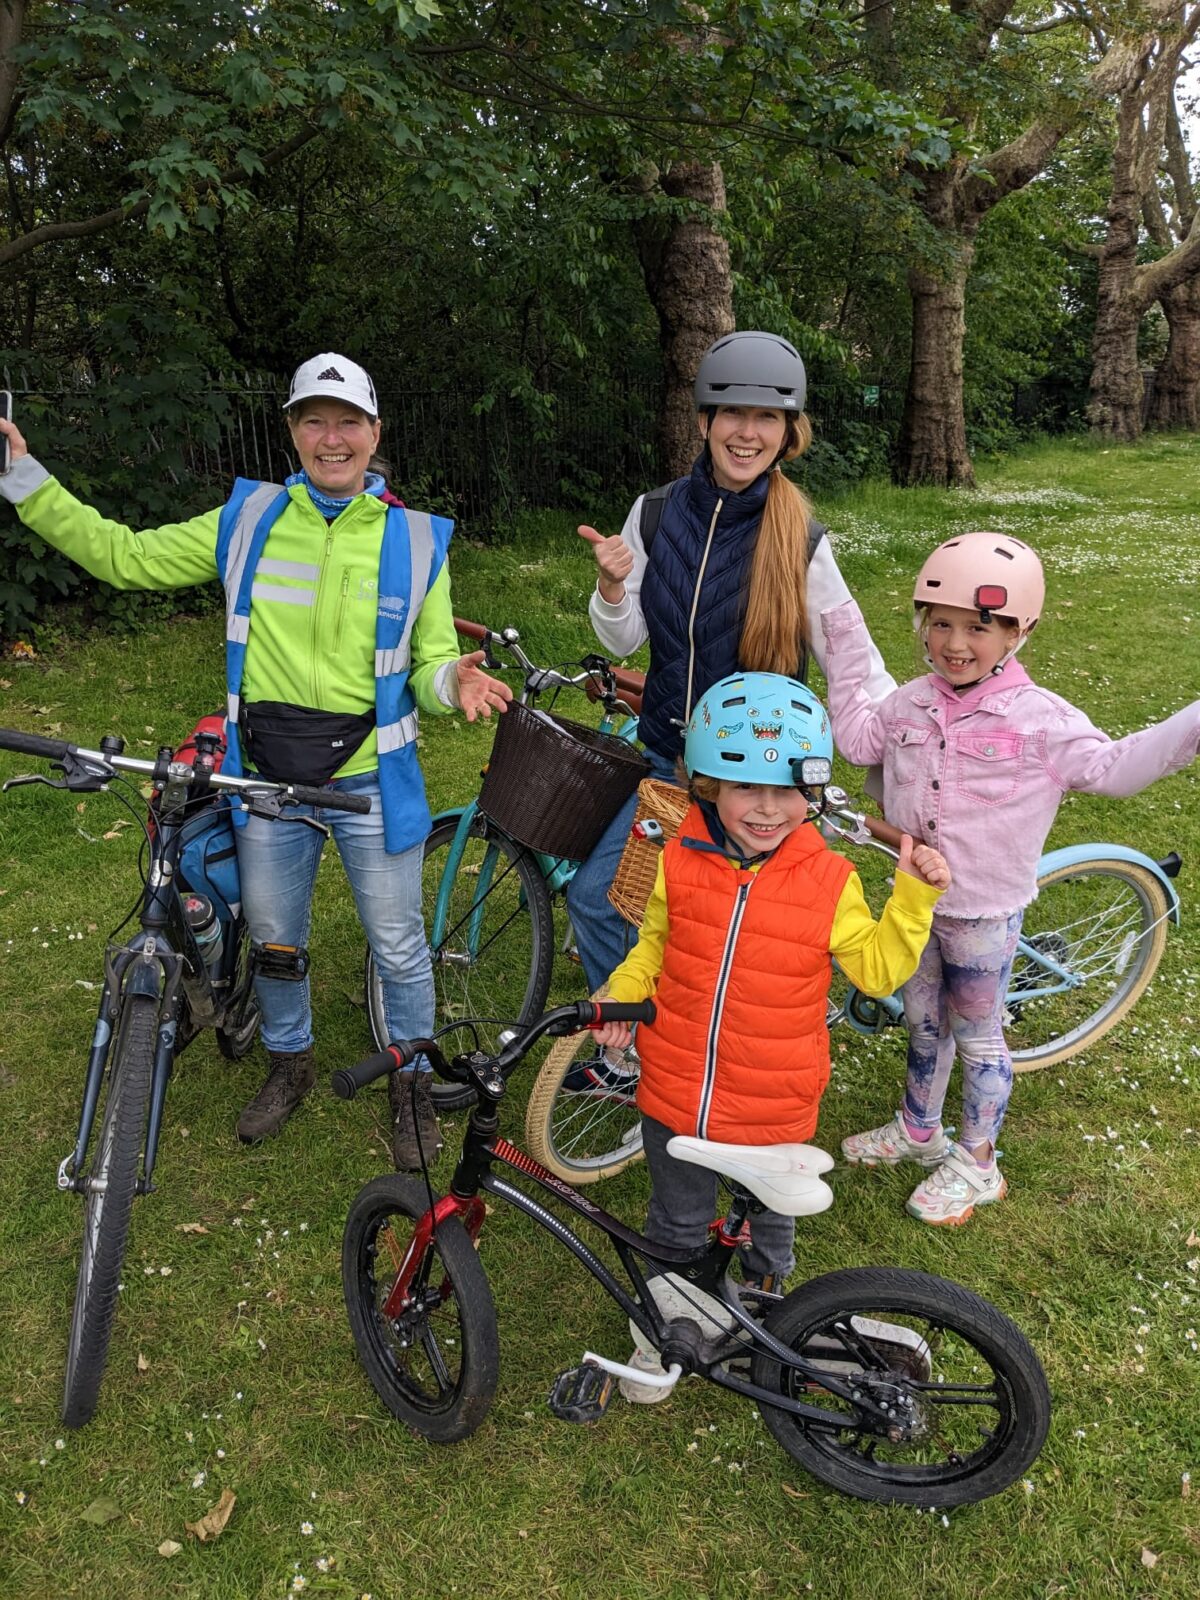 Tower Hamlets family enjoying Bikeworks cycle training